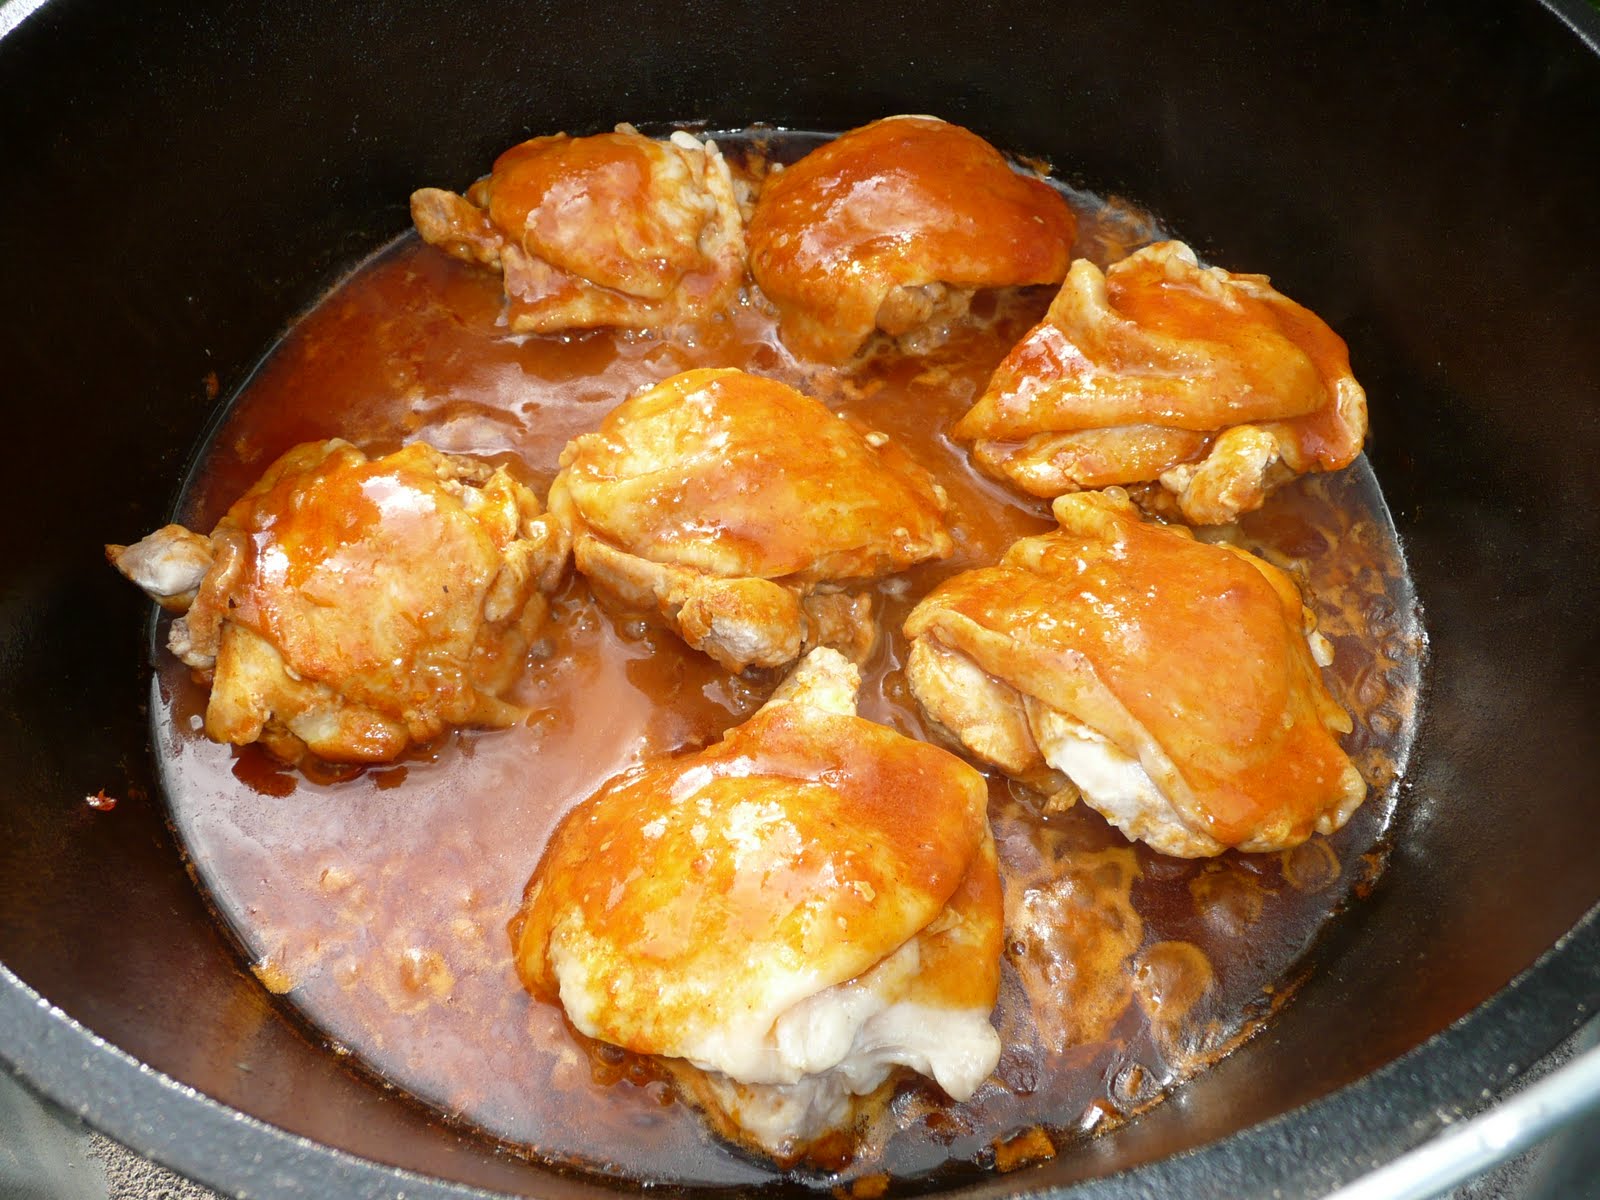 Heinz 57 Chicken Recipe